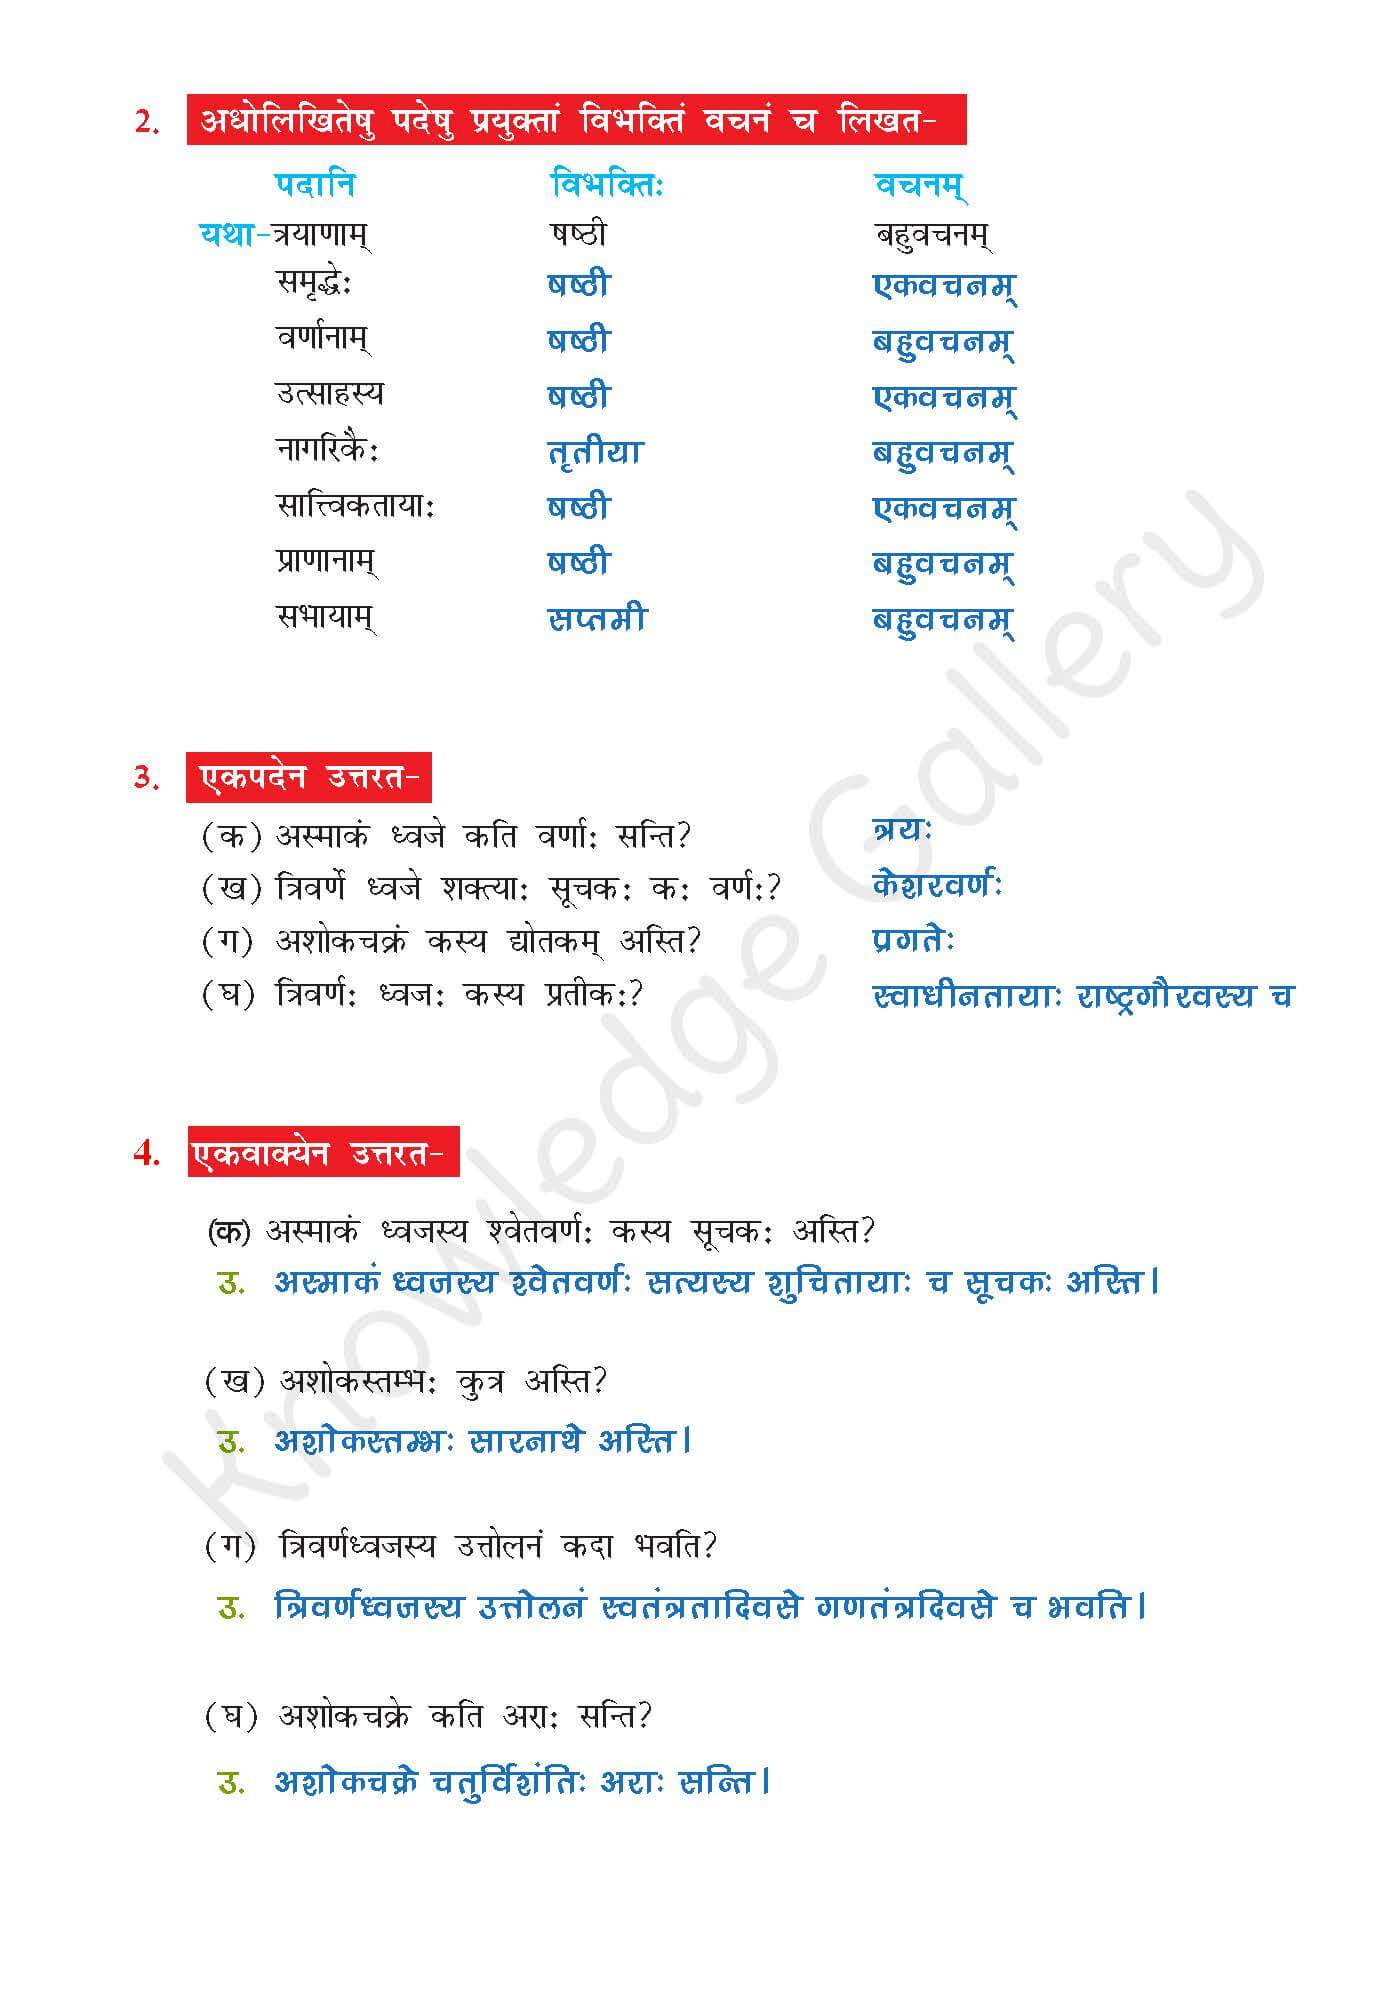 NCERT Solution For Class 7 Sanskrit Chapter 7 part 4